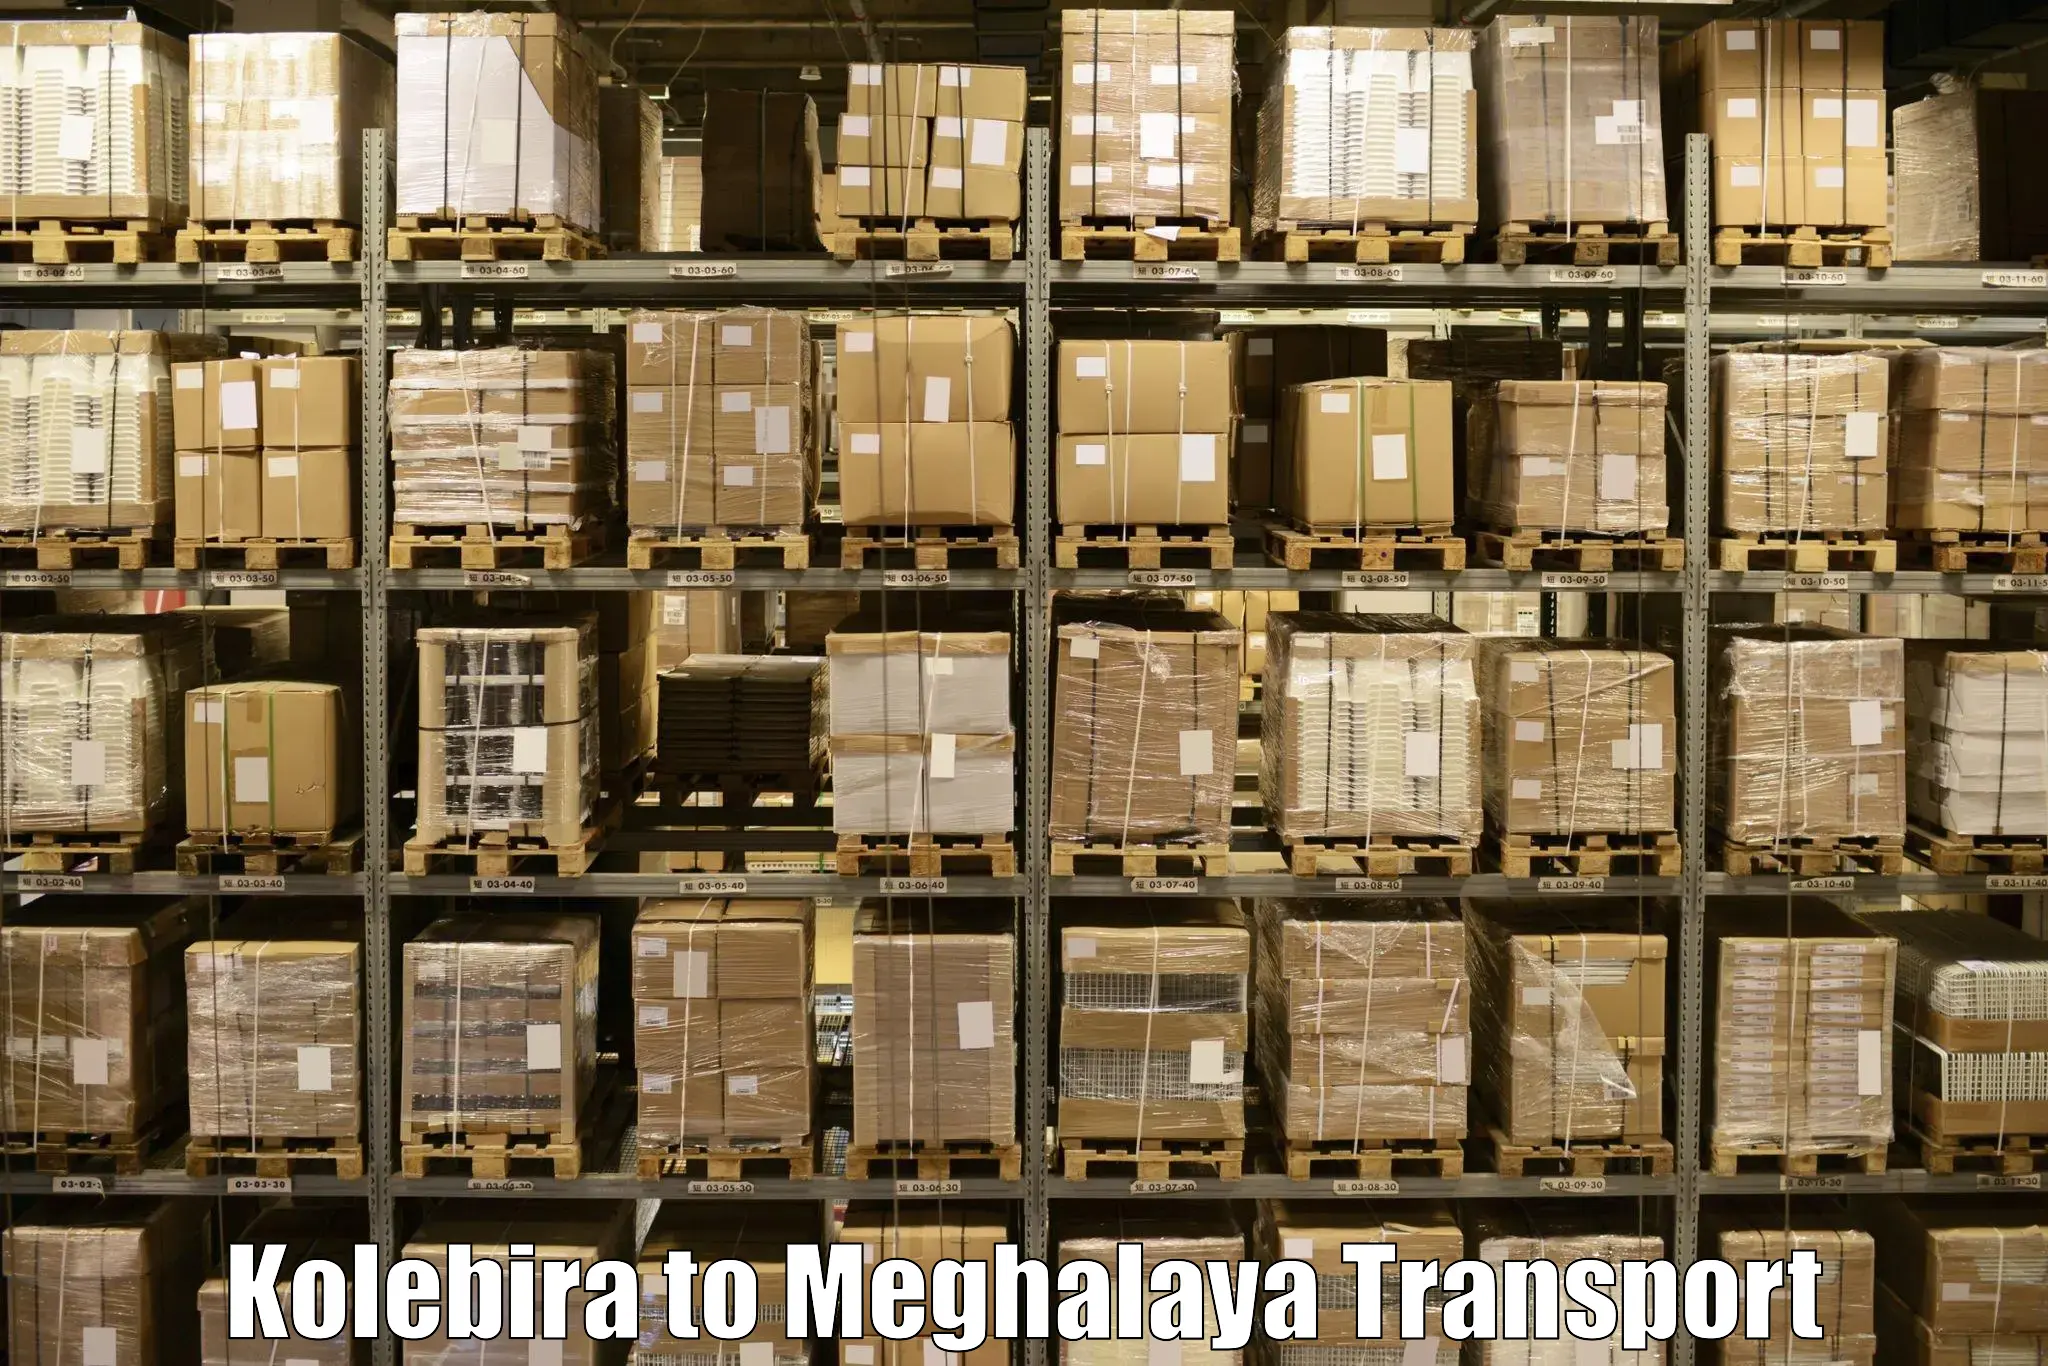 Commercial transport service Kolebira to NIT Meghalaya